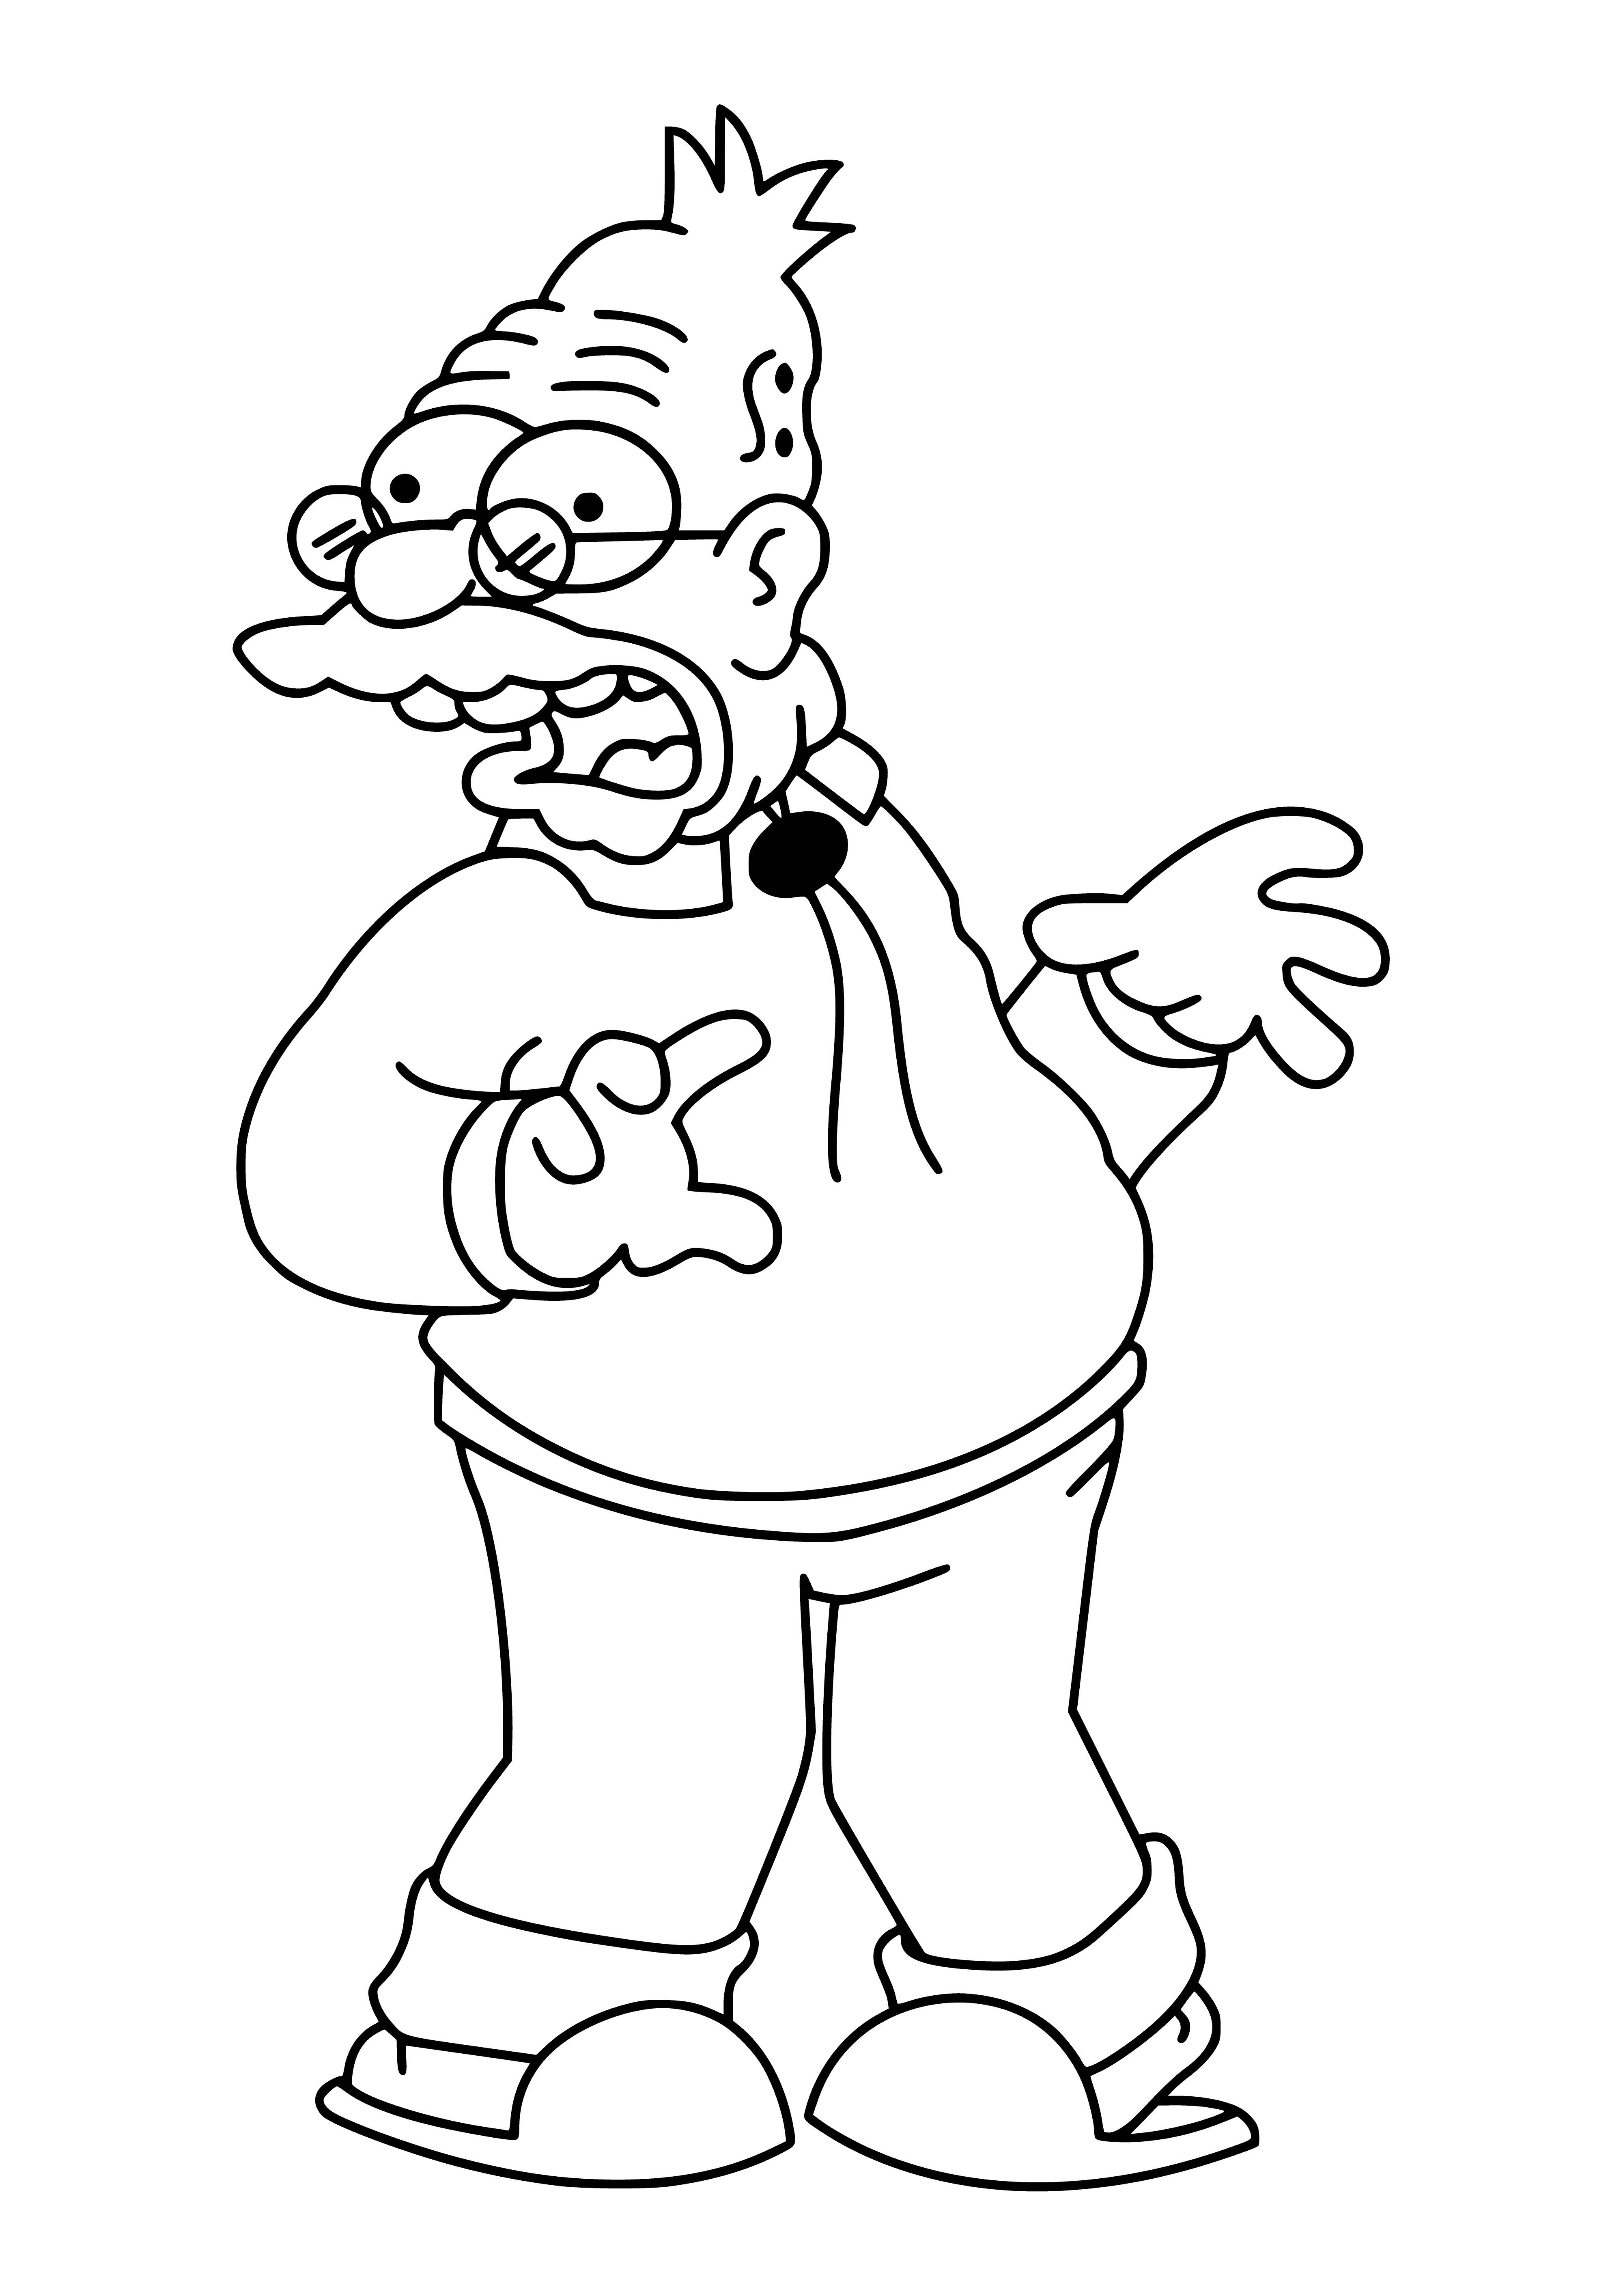 Il padre di Homer - Abraham Simpson pagina da colorare